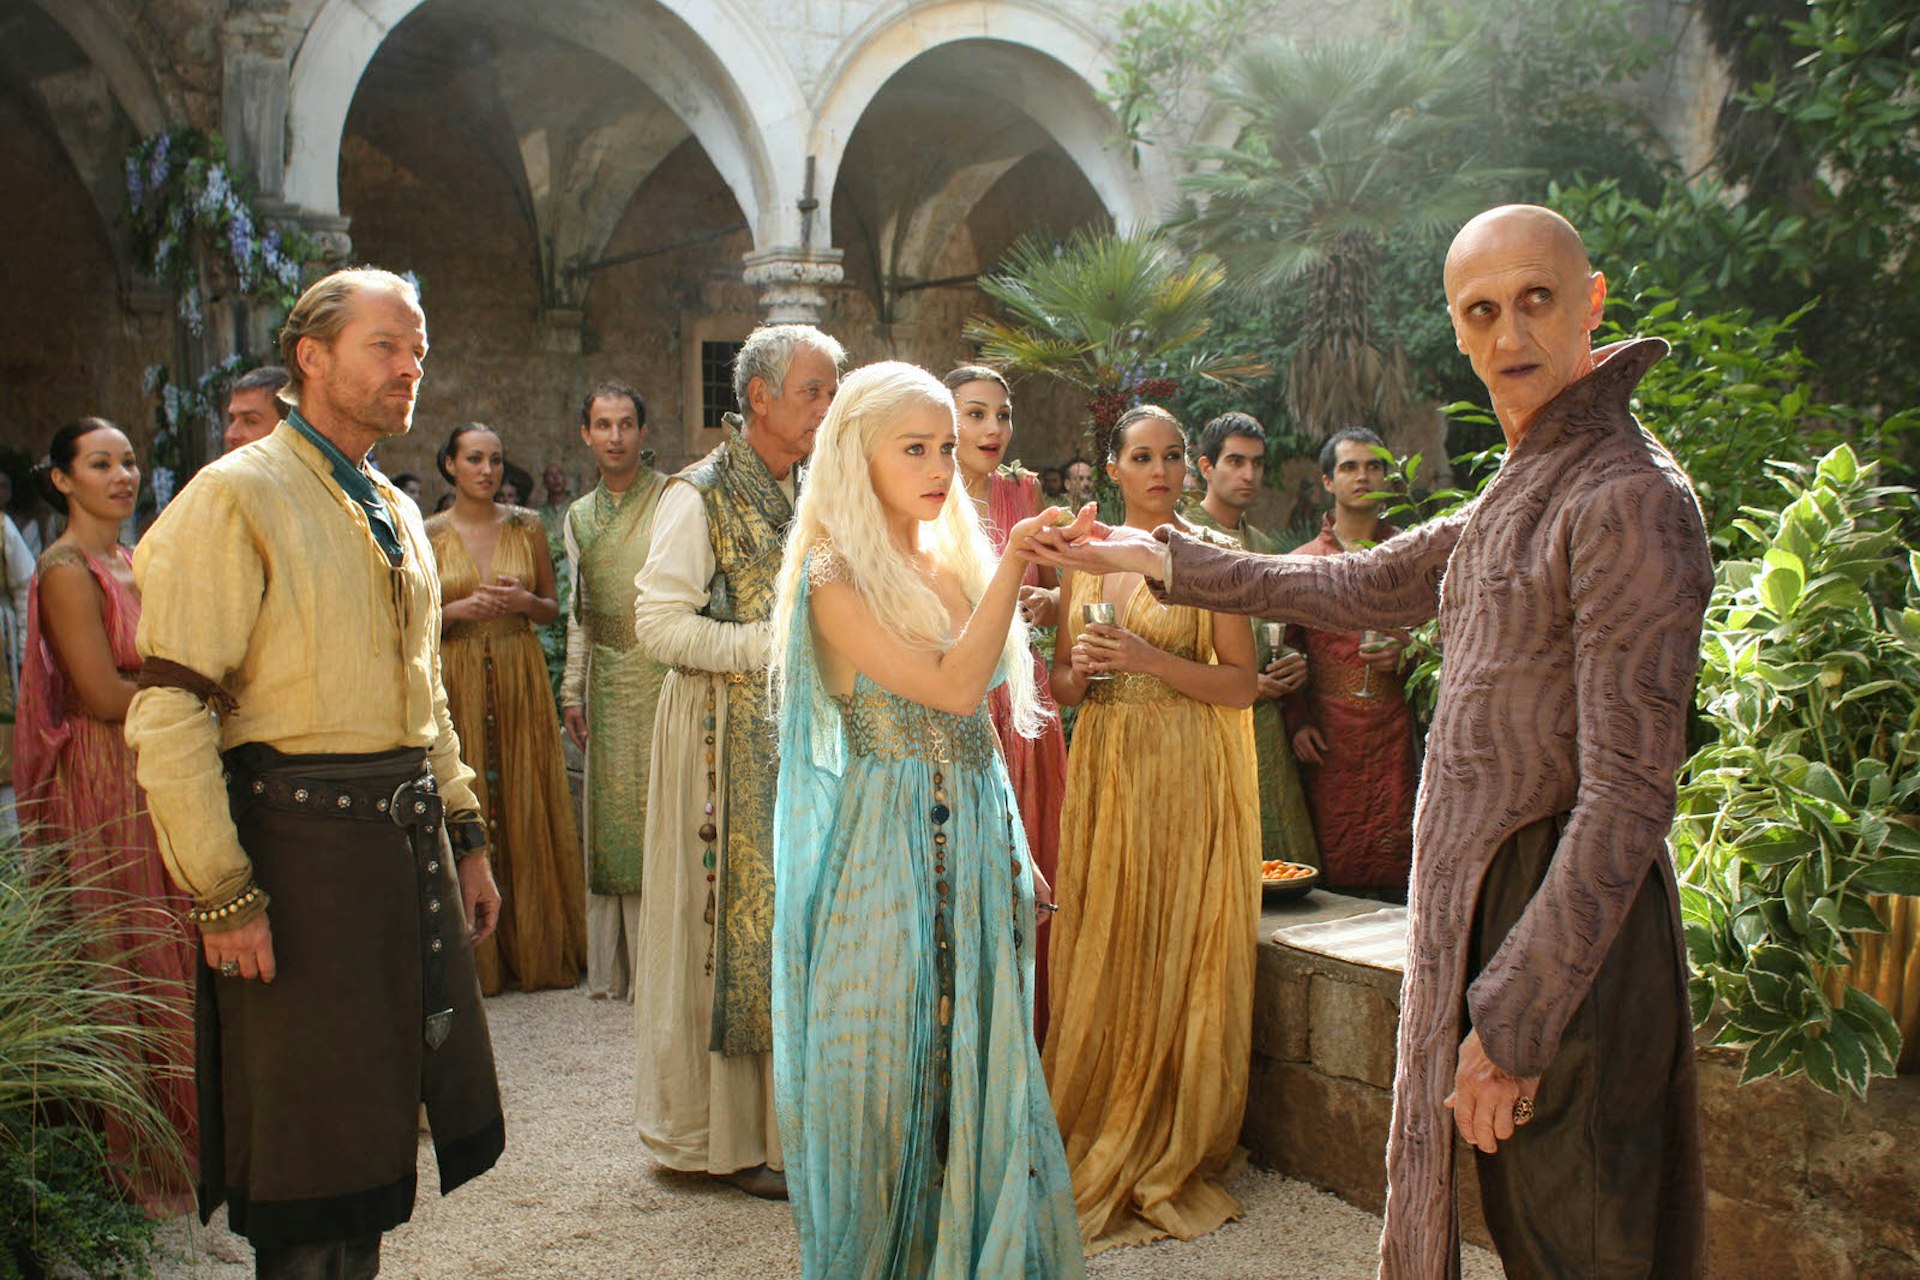 Pyat Pree welcomes Daenerys to Qarth in Lokrum's Benedictine monastery